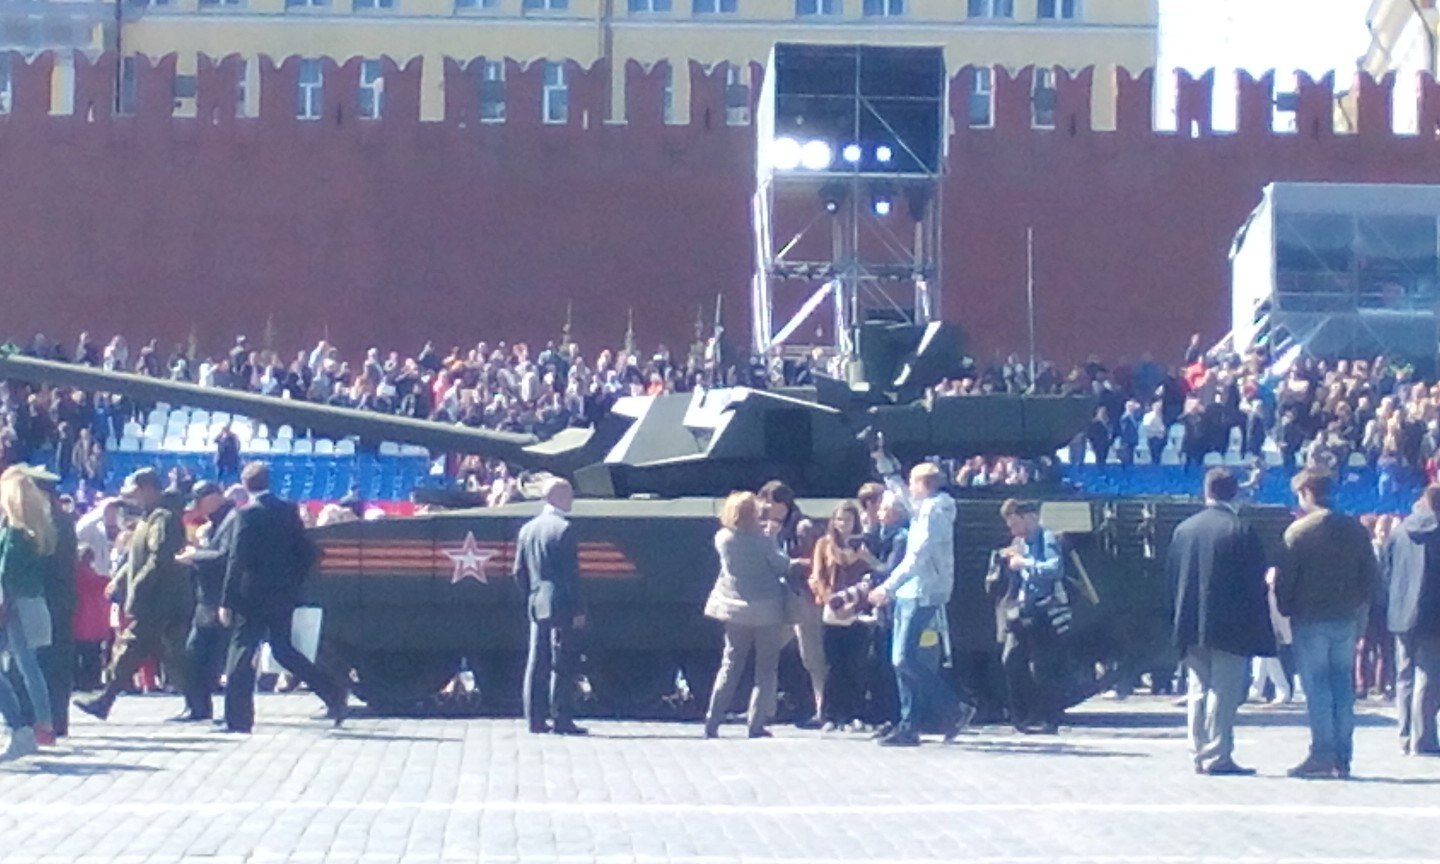 Поклонники и враги «Арматы». Как новый танк встретили в России, на Западе и в соцсетях